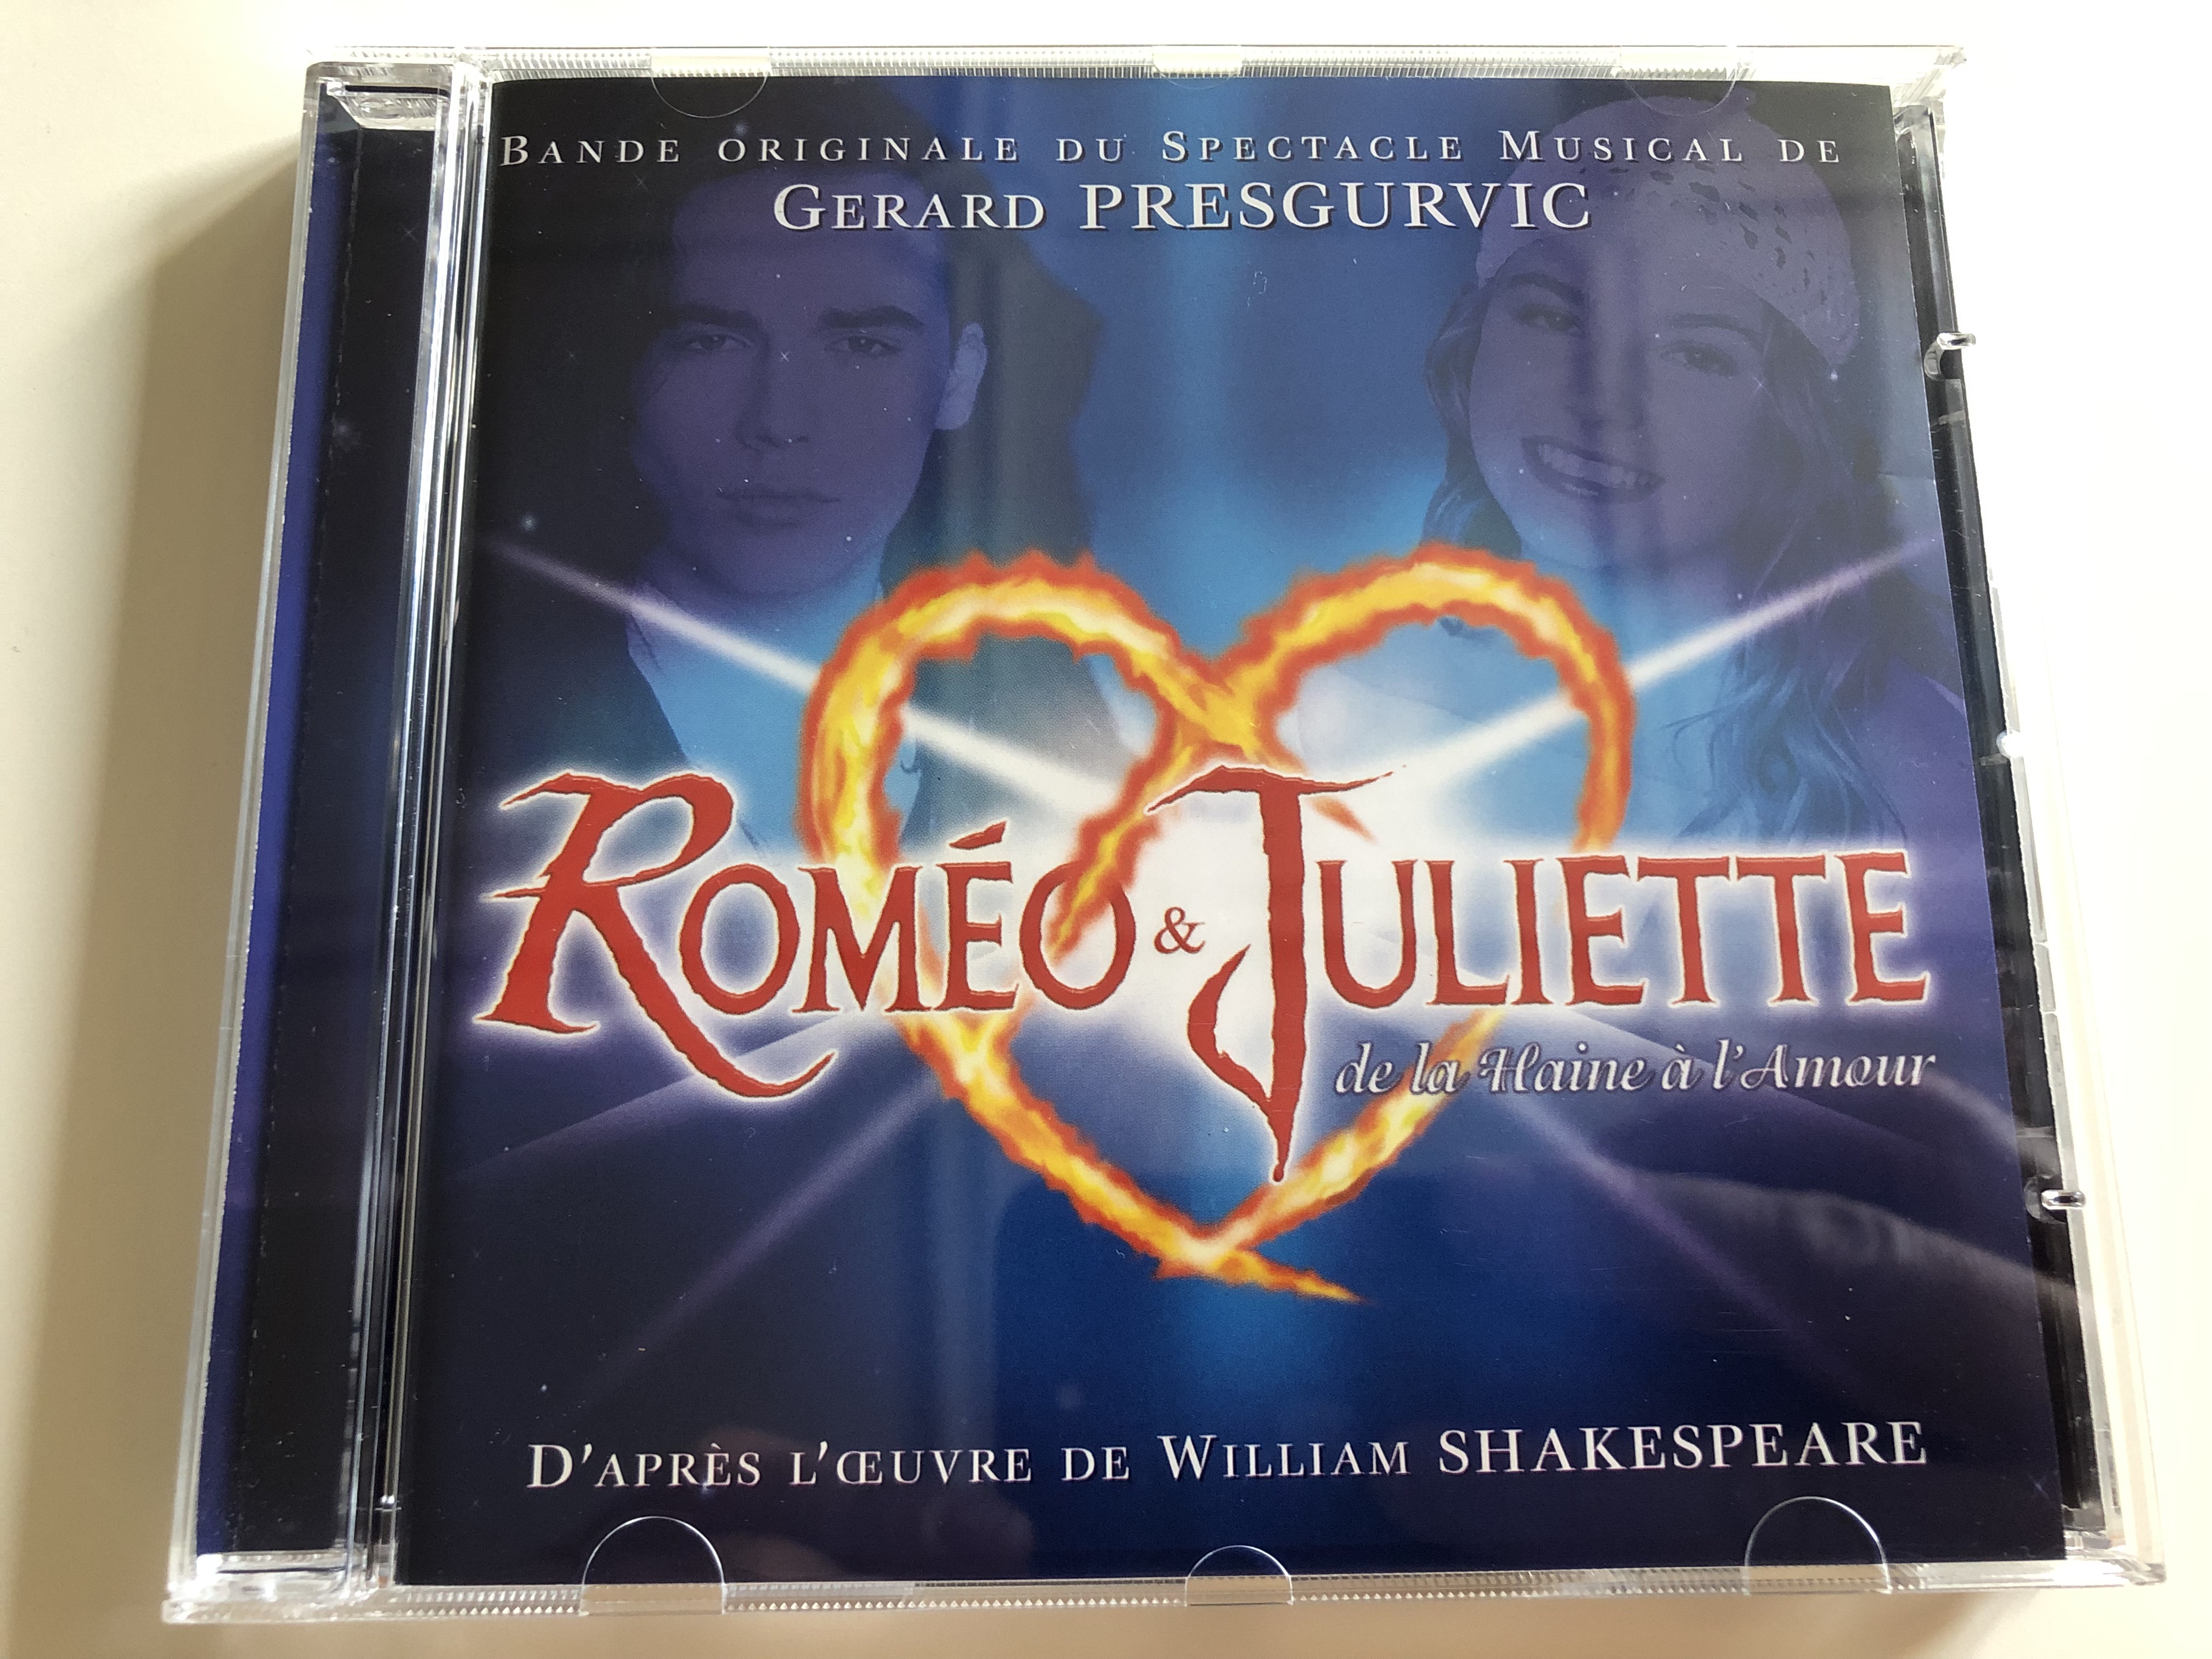 rom-o-juliette-de-la-haine-l-amour-audio-cd-2000-romeo-juliet-from-hatred-to-love-bande-originale-du-spectacle-musical-de-gerard-presgurvic-d-apr-s-l-ceuvre-de-william-shakespeare-1-.jpg